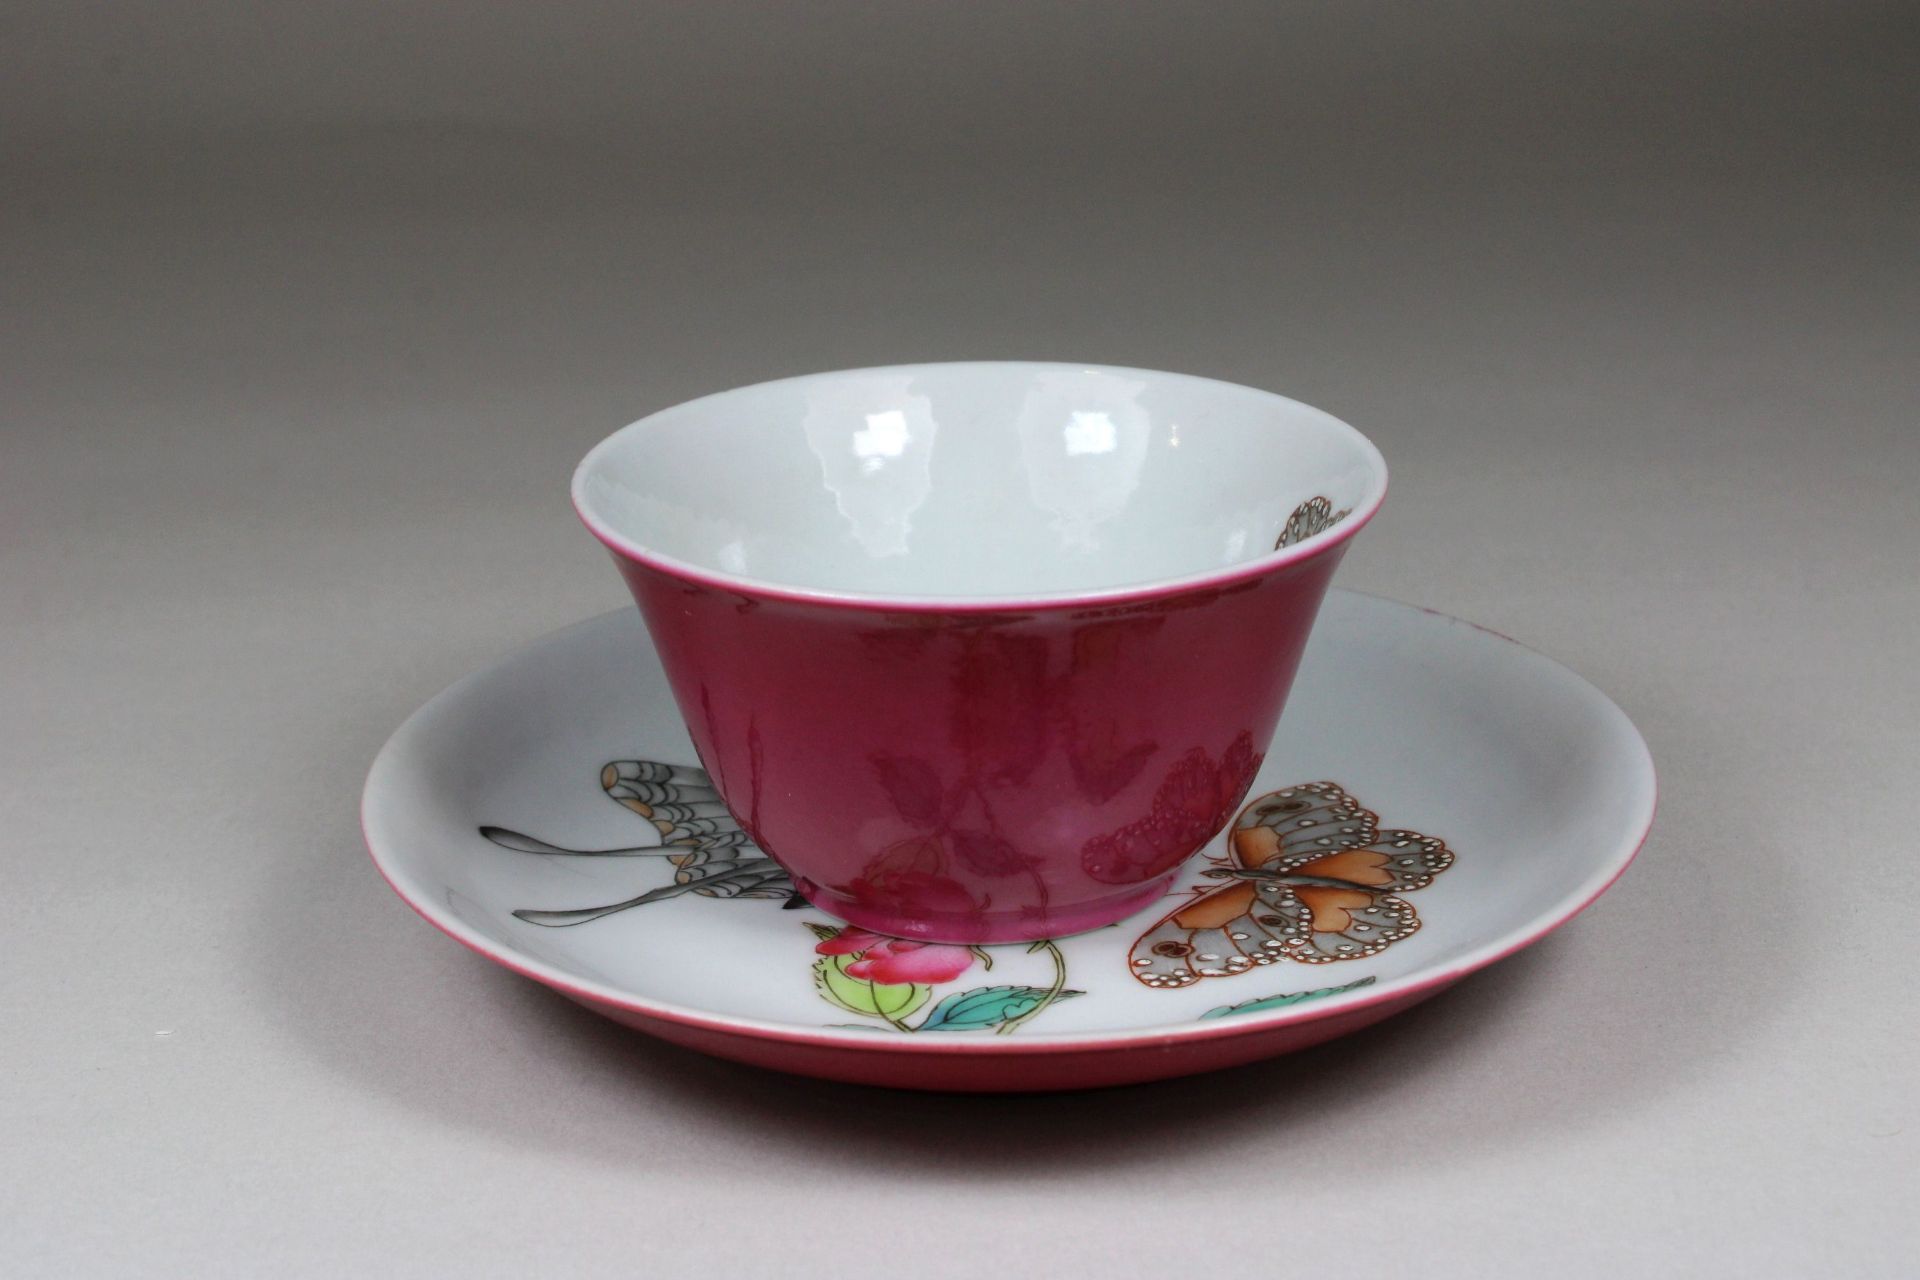 China, Porzellan, Teeset, Cup und Teller mit Florische Darstellung, außen Rot gefärbt, Dm von 8 - Image 3 of 3